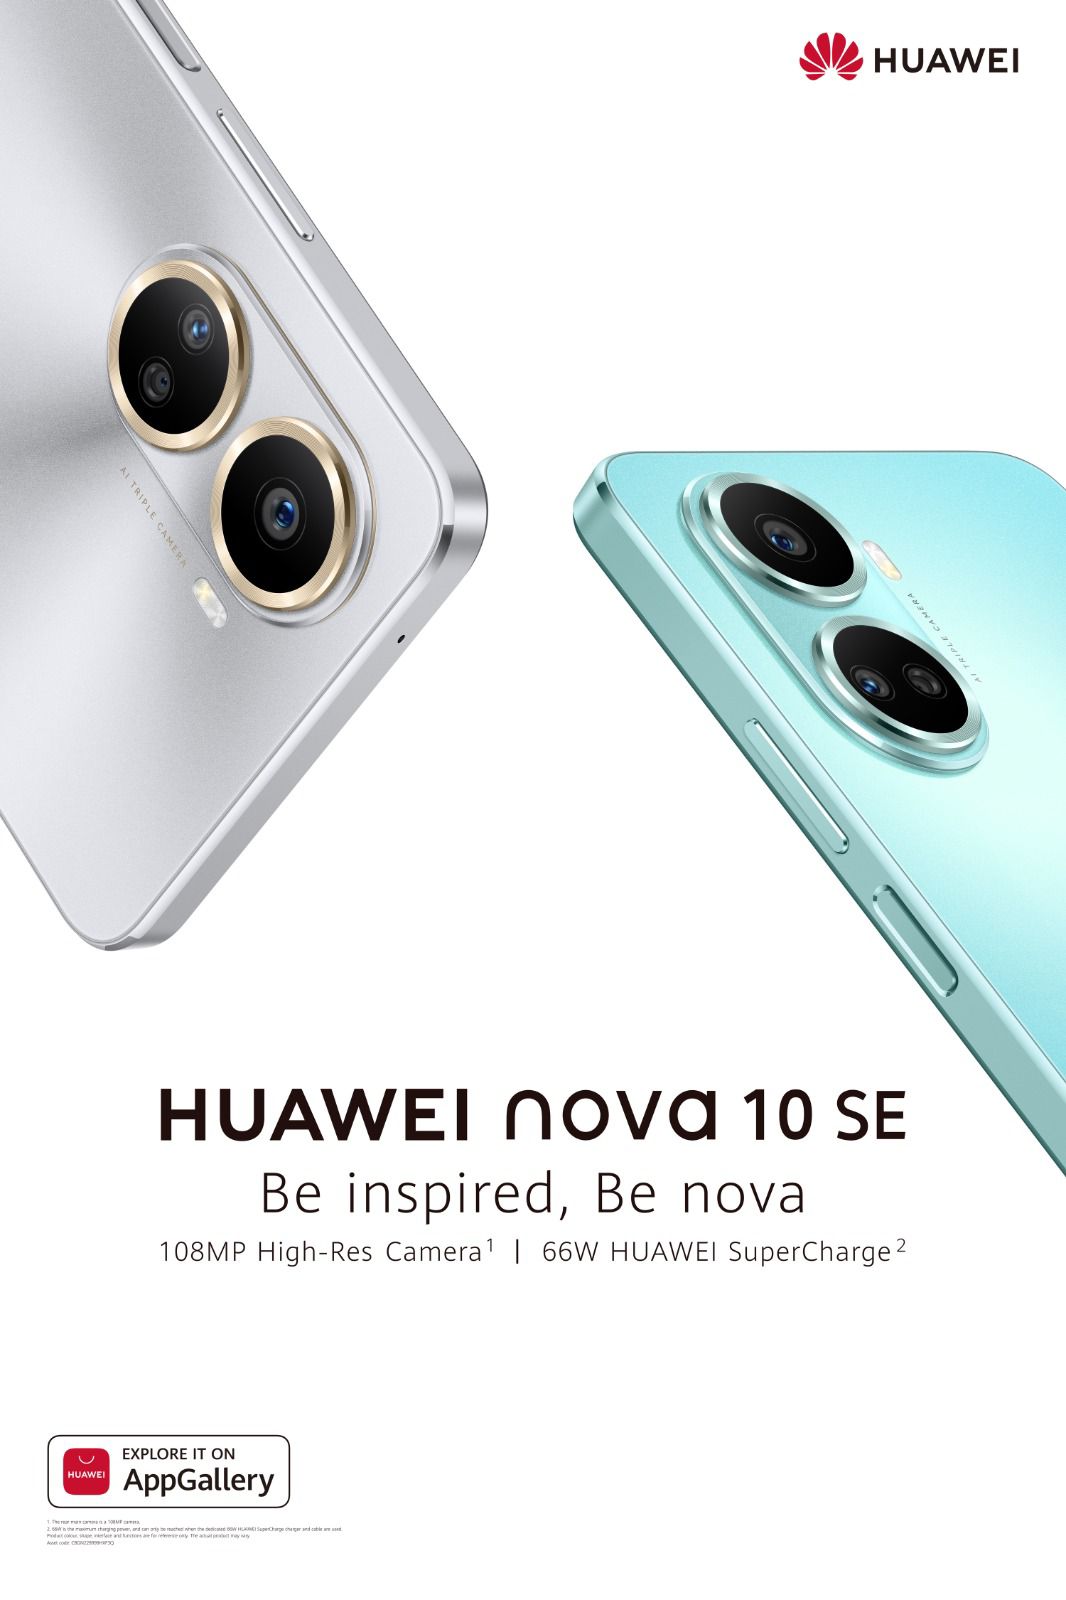 هاتف HUAWEI nova 10 SE